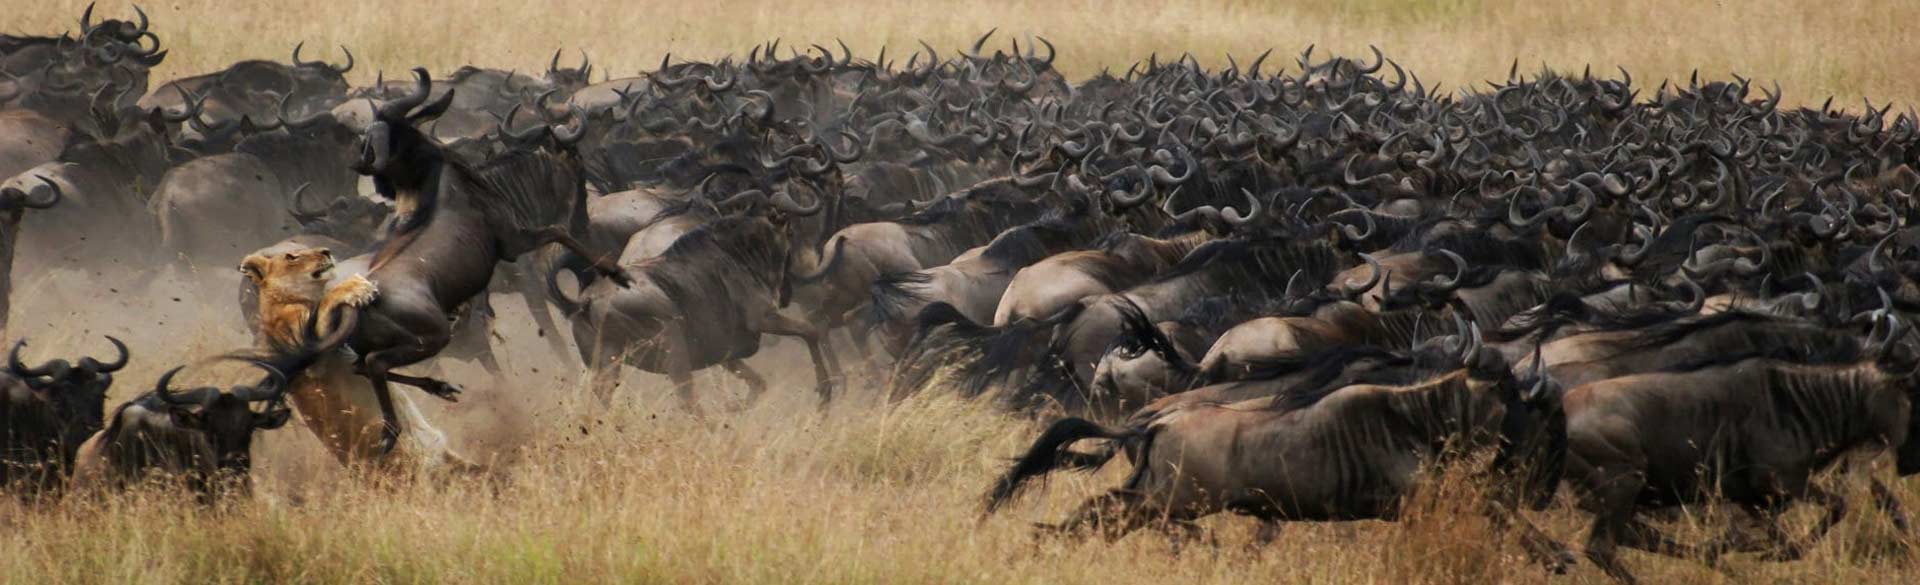 Ndutu Migration Safari Calving Season